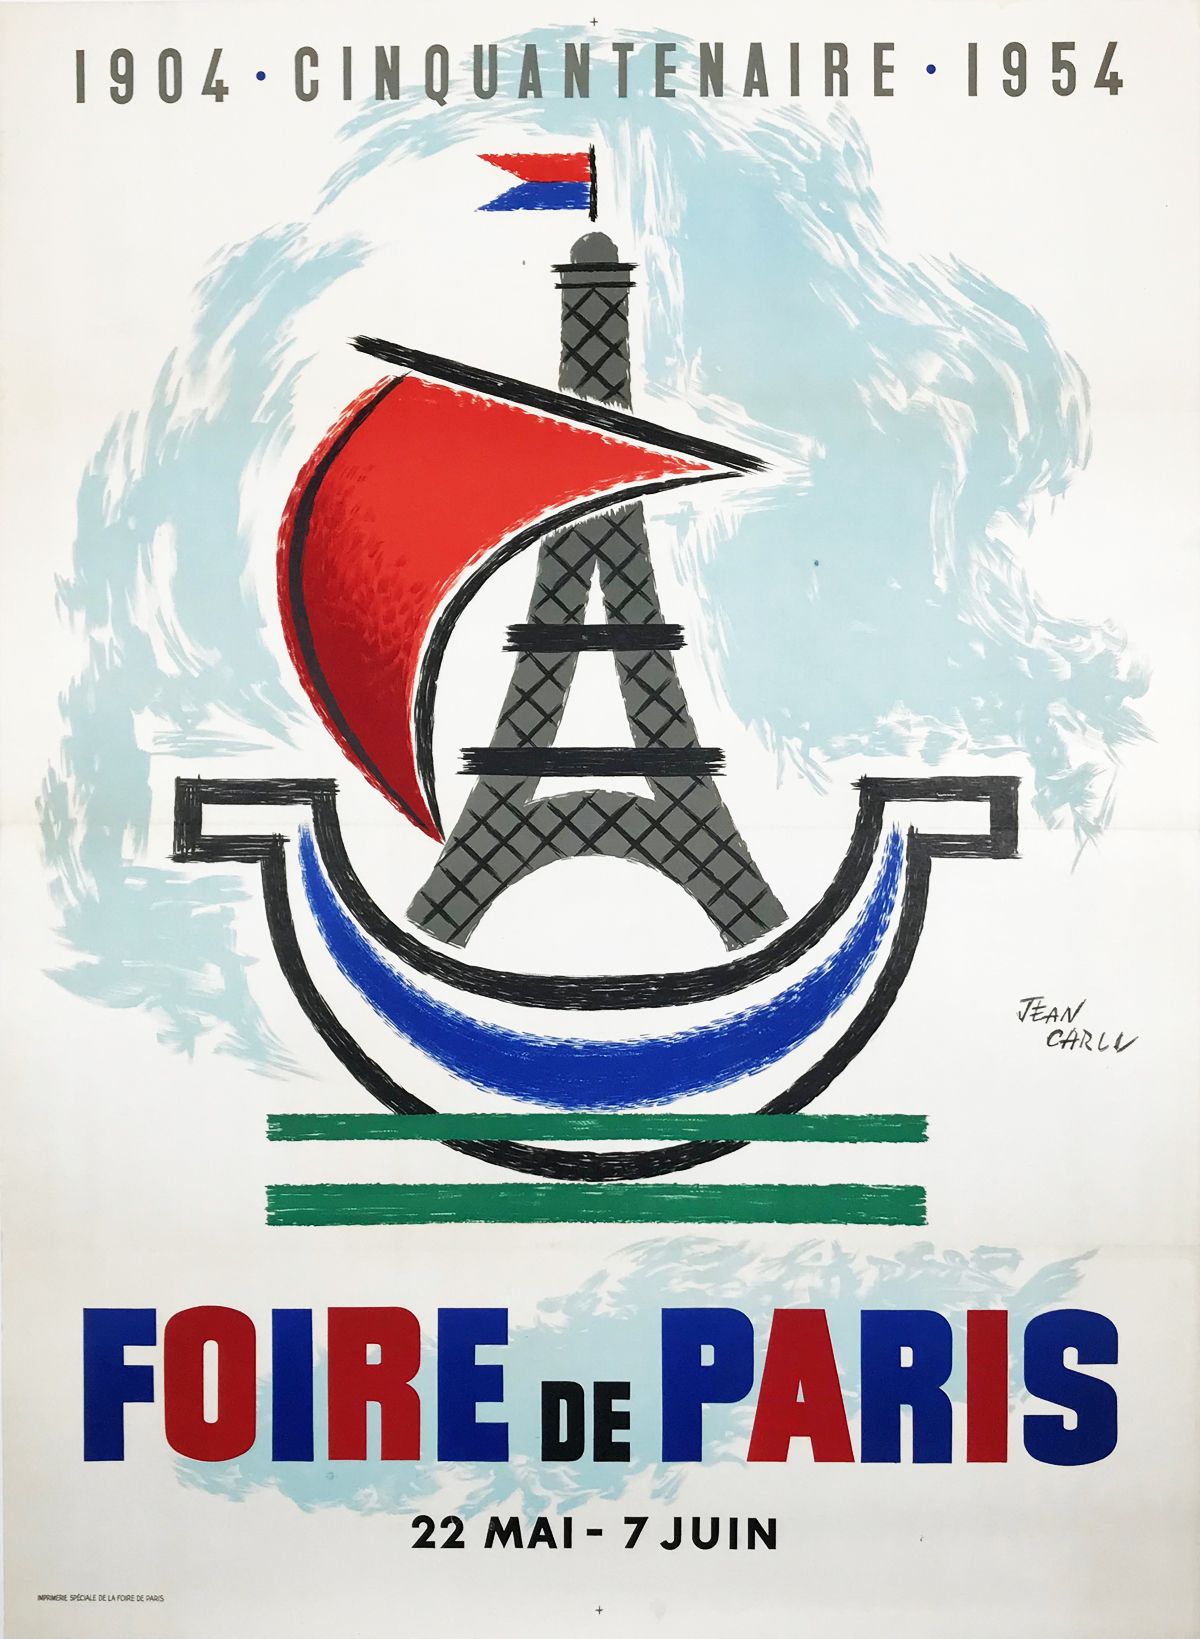 Foire De Paris by Jean Carlu Original 1954 Vintage French Commerce Exhibition Advertisement Lithograph Poster Linen Backed.